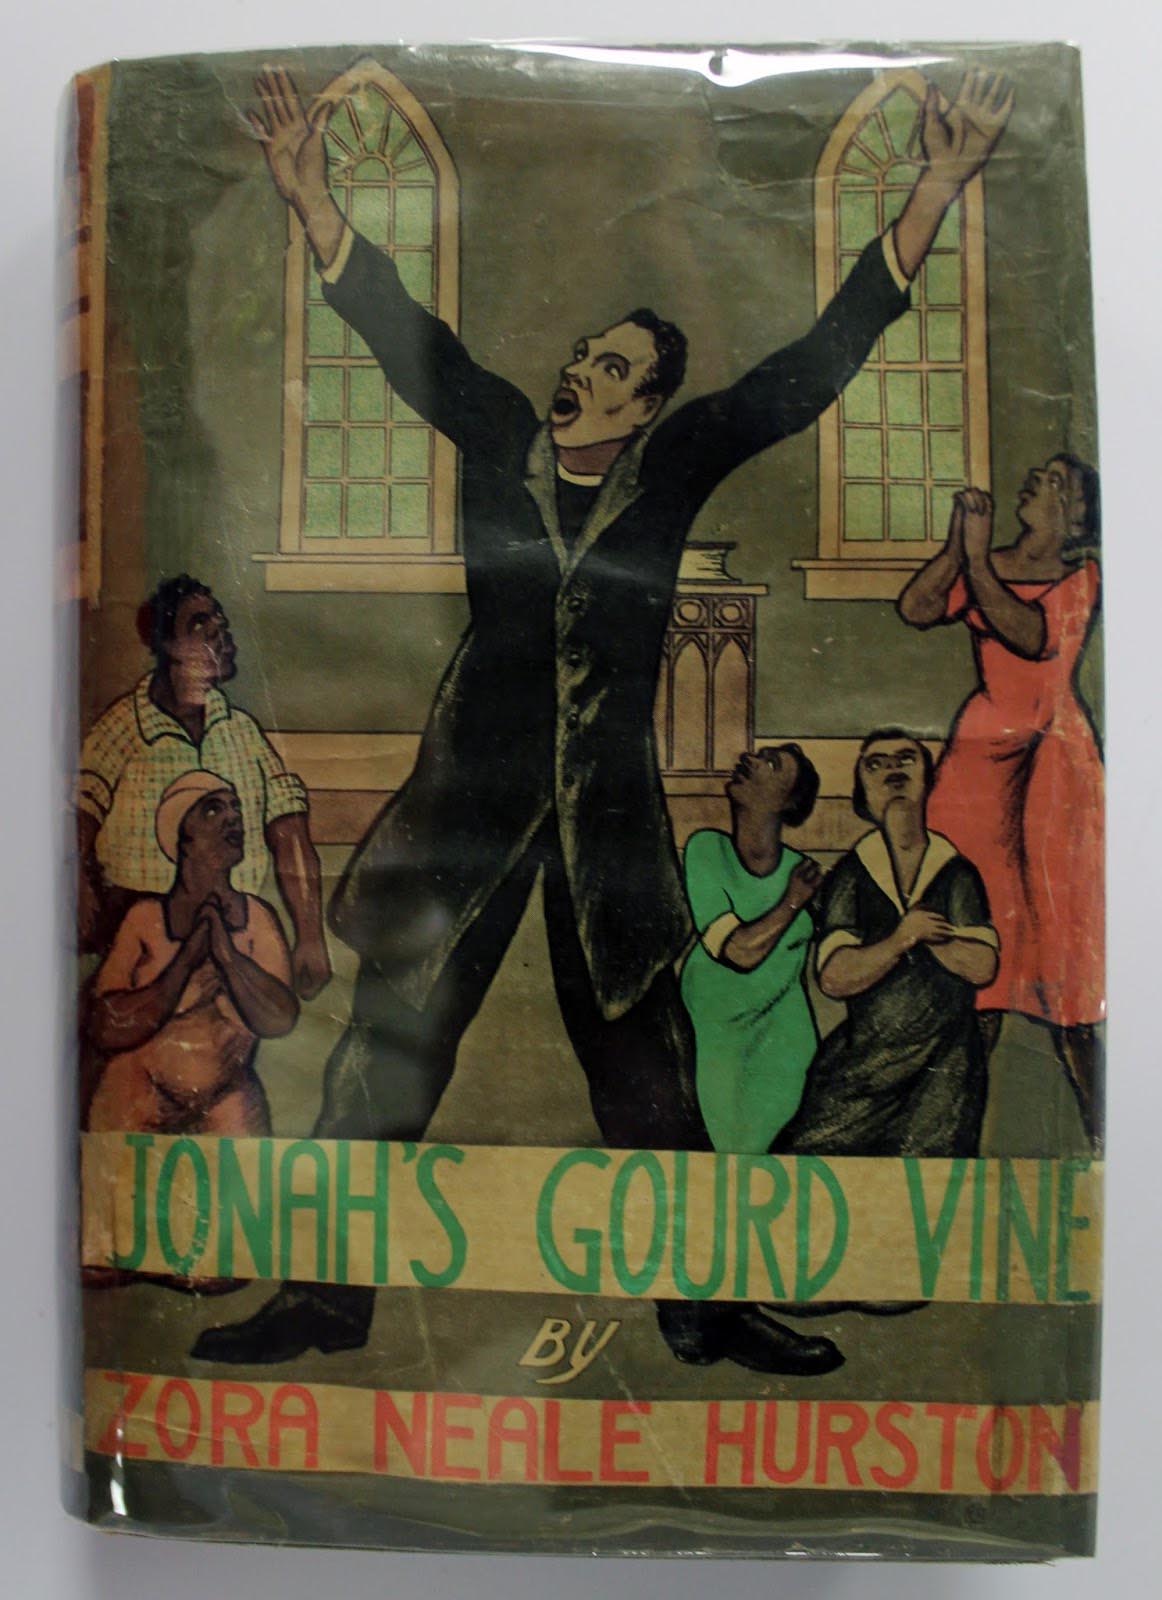 Jonah's Gourd Vine book dust cover.